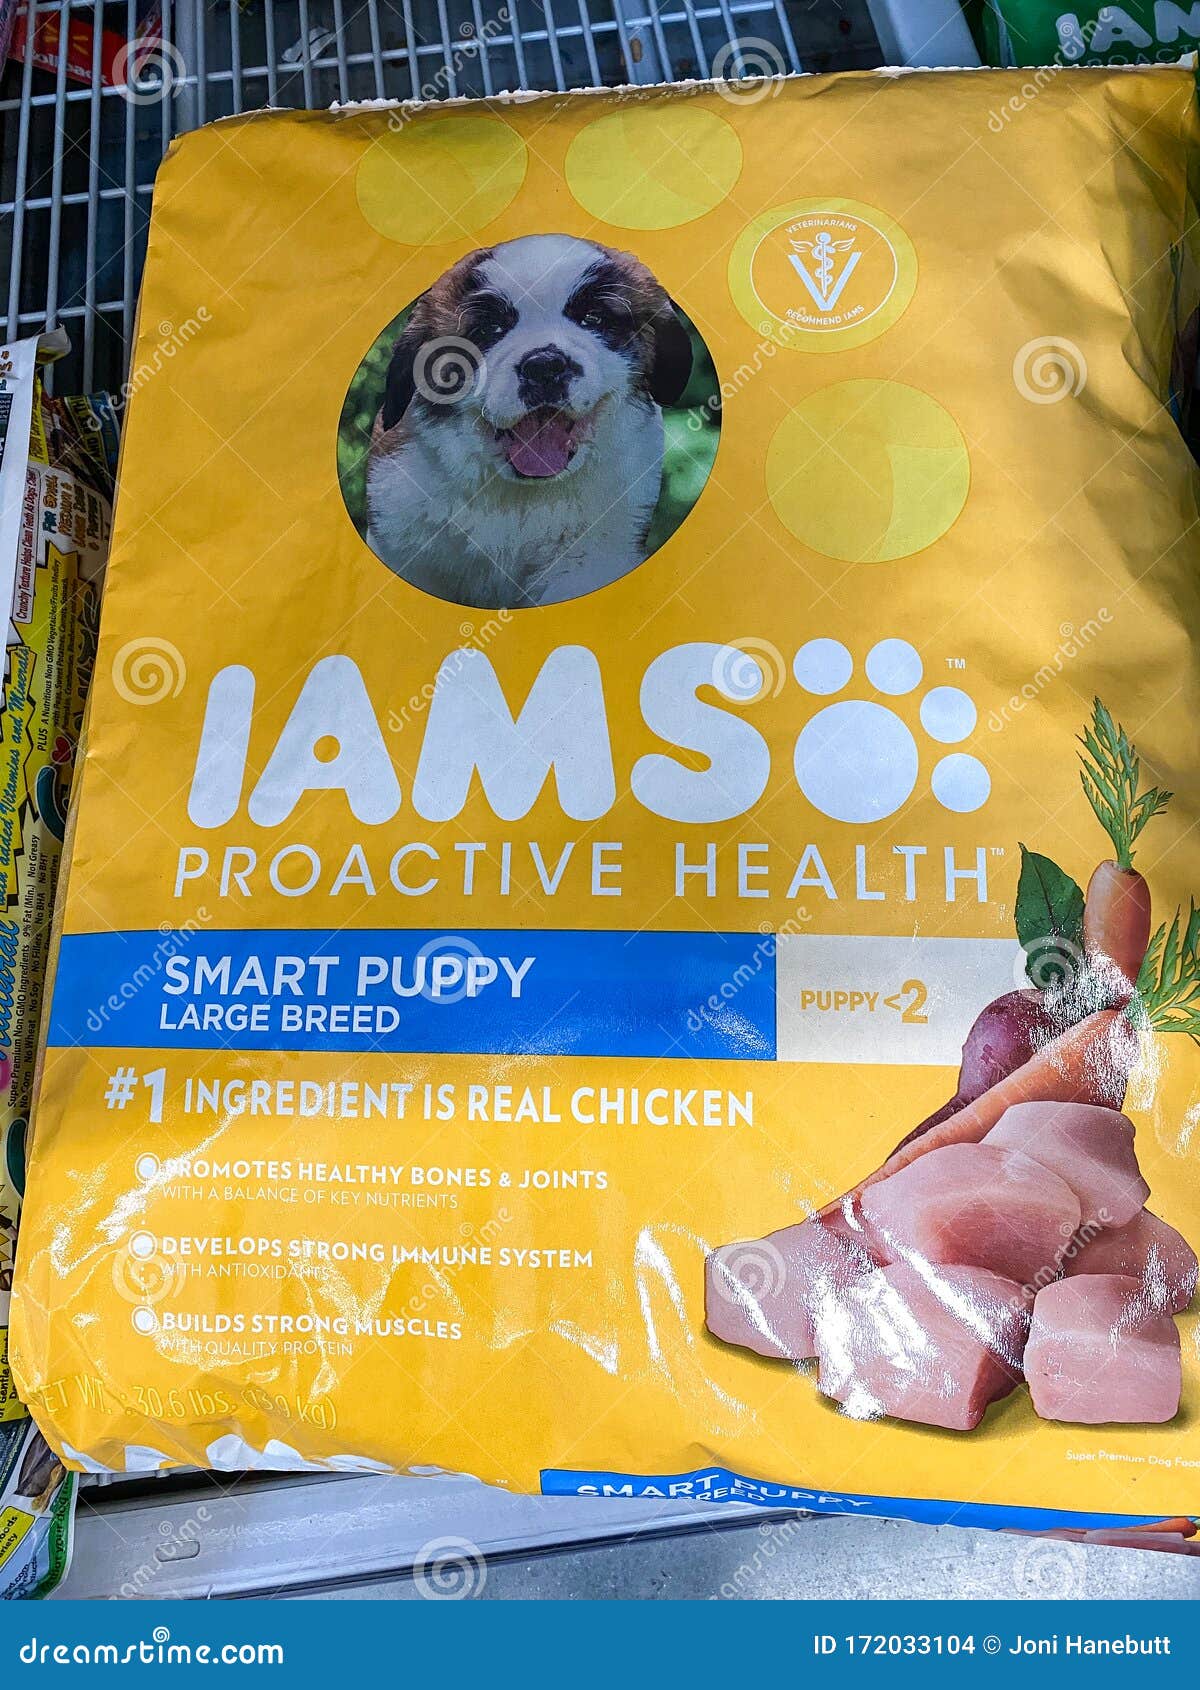 iams dog food sams